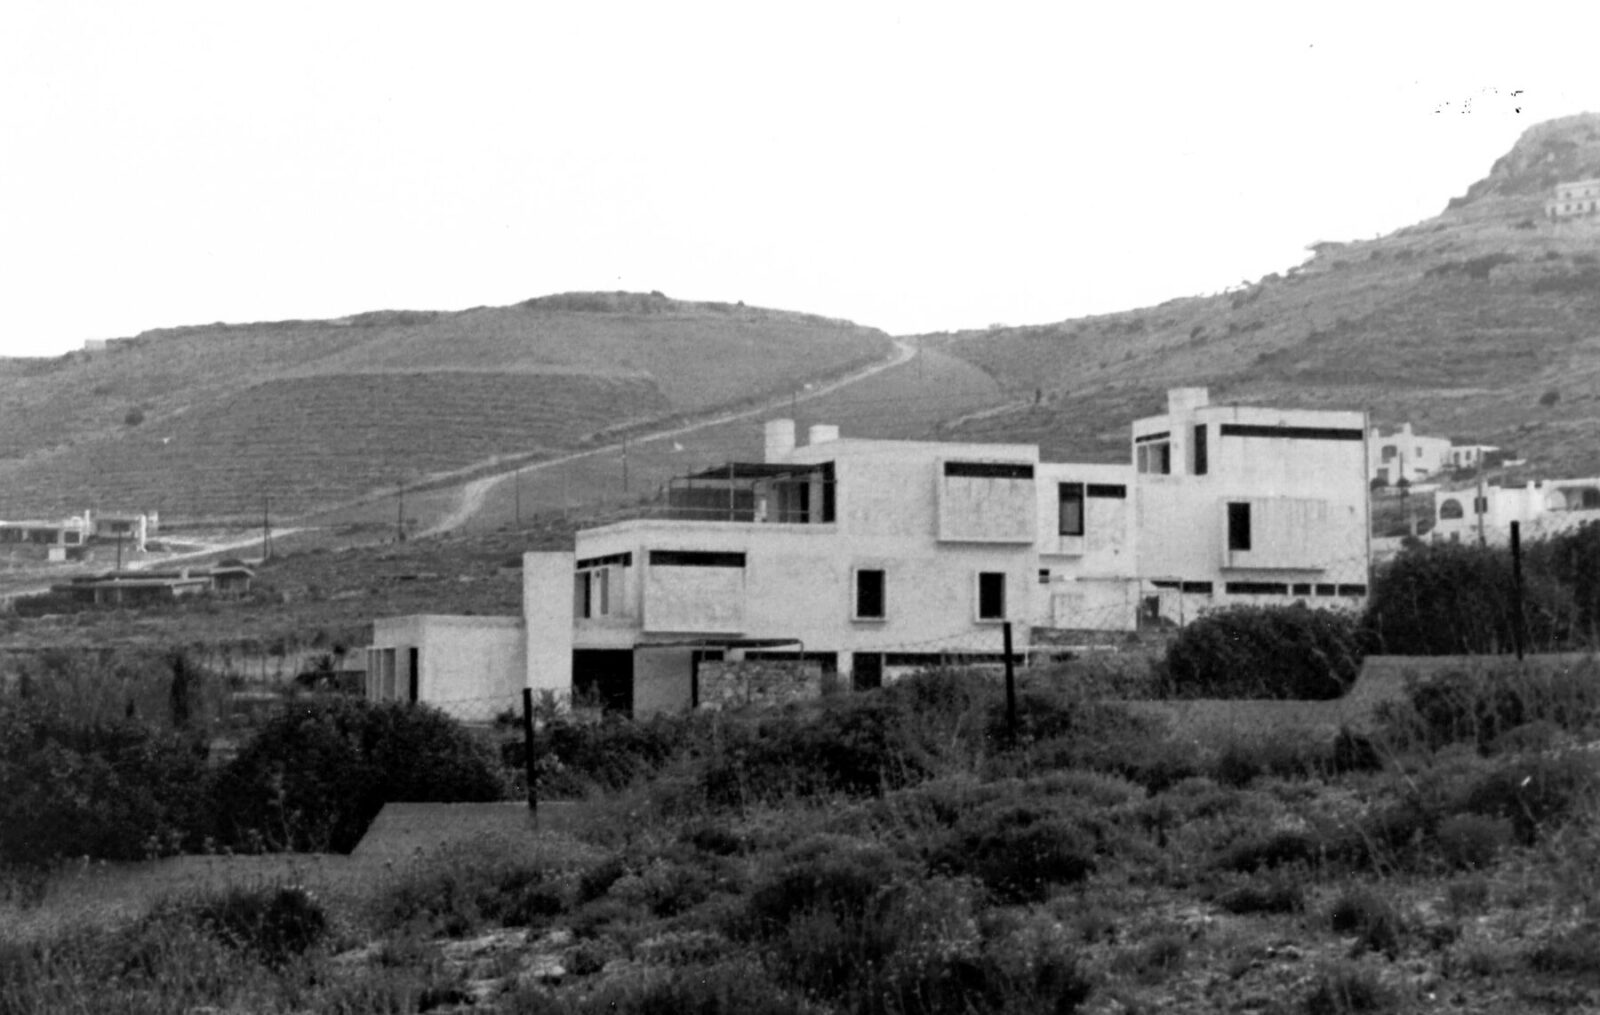 Archisearch Διερεύνηση της Γυναικείας Παρουσίας στην Ελληνική Μεταπολεμική Αρχιτεκτονική : Αναστασία Τζάκου, Μυρτώ Κωστίκα, Σέβα Καρακώστα - 3 Μονογραφίες | Ερευνητική εργασία από τις Κορίνα Νούση & Έλλη Τσακοπούλου